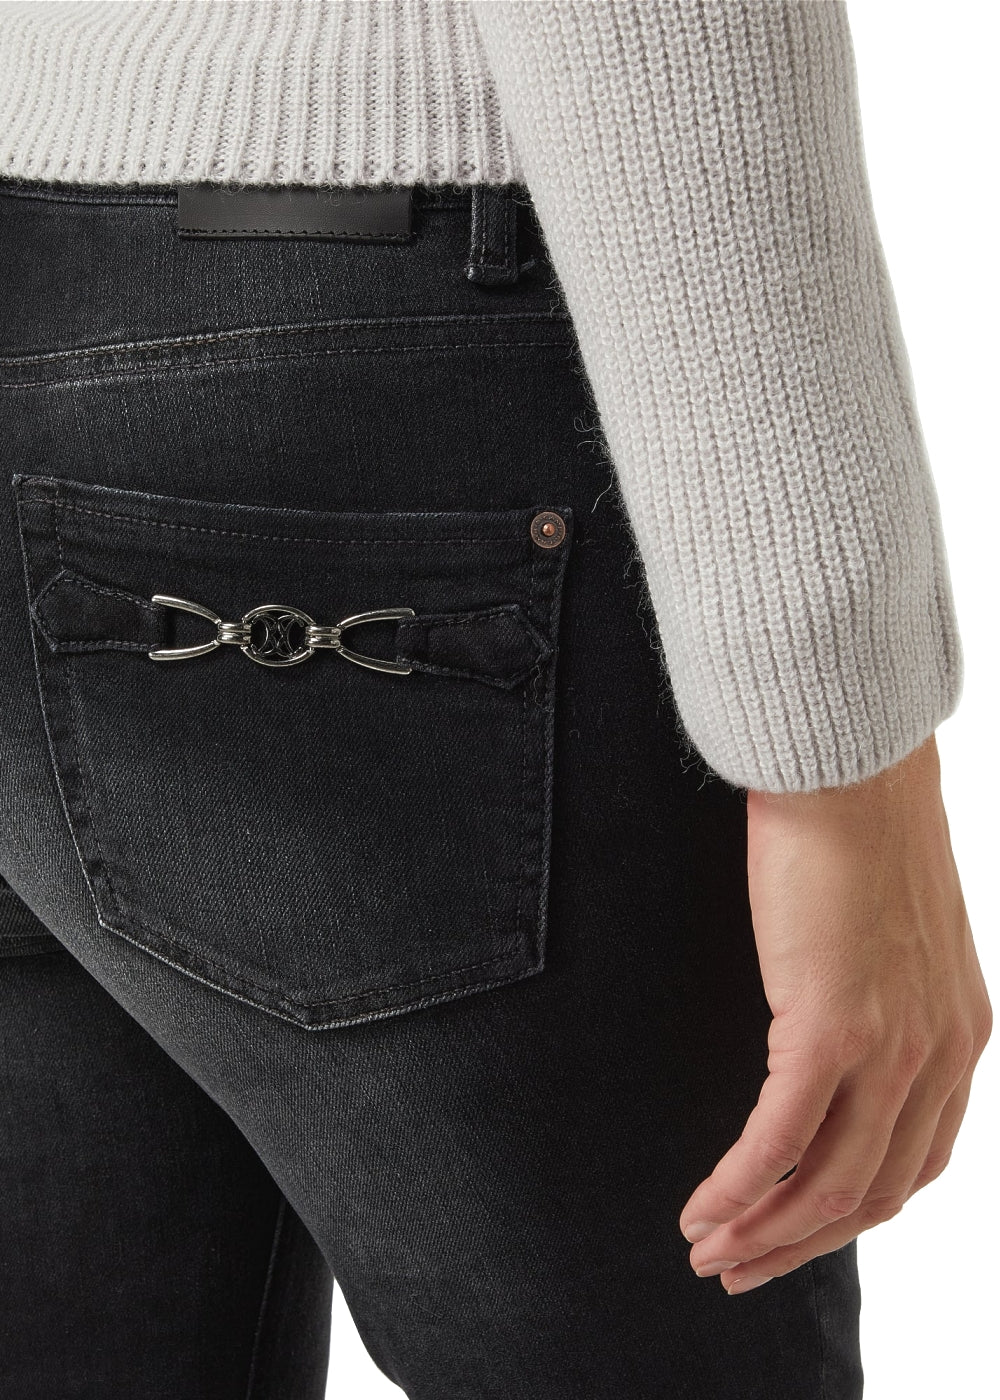 Cambio Jeans Paris ankle cut in dunklen grau. Slim fit 5-Pocket Hose in weicher Denim Stretch Qualität von Cambio. Jeans Paris mit gepflegter Waschung und normaler Taillenhöhe aus der neuen Cambio Kollektion.